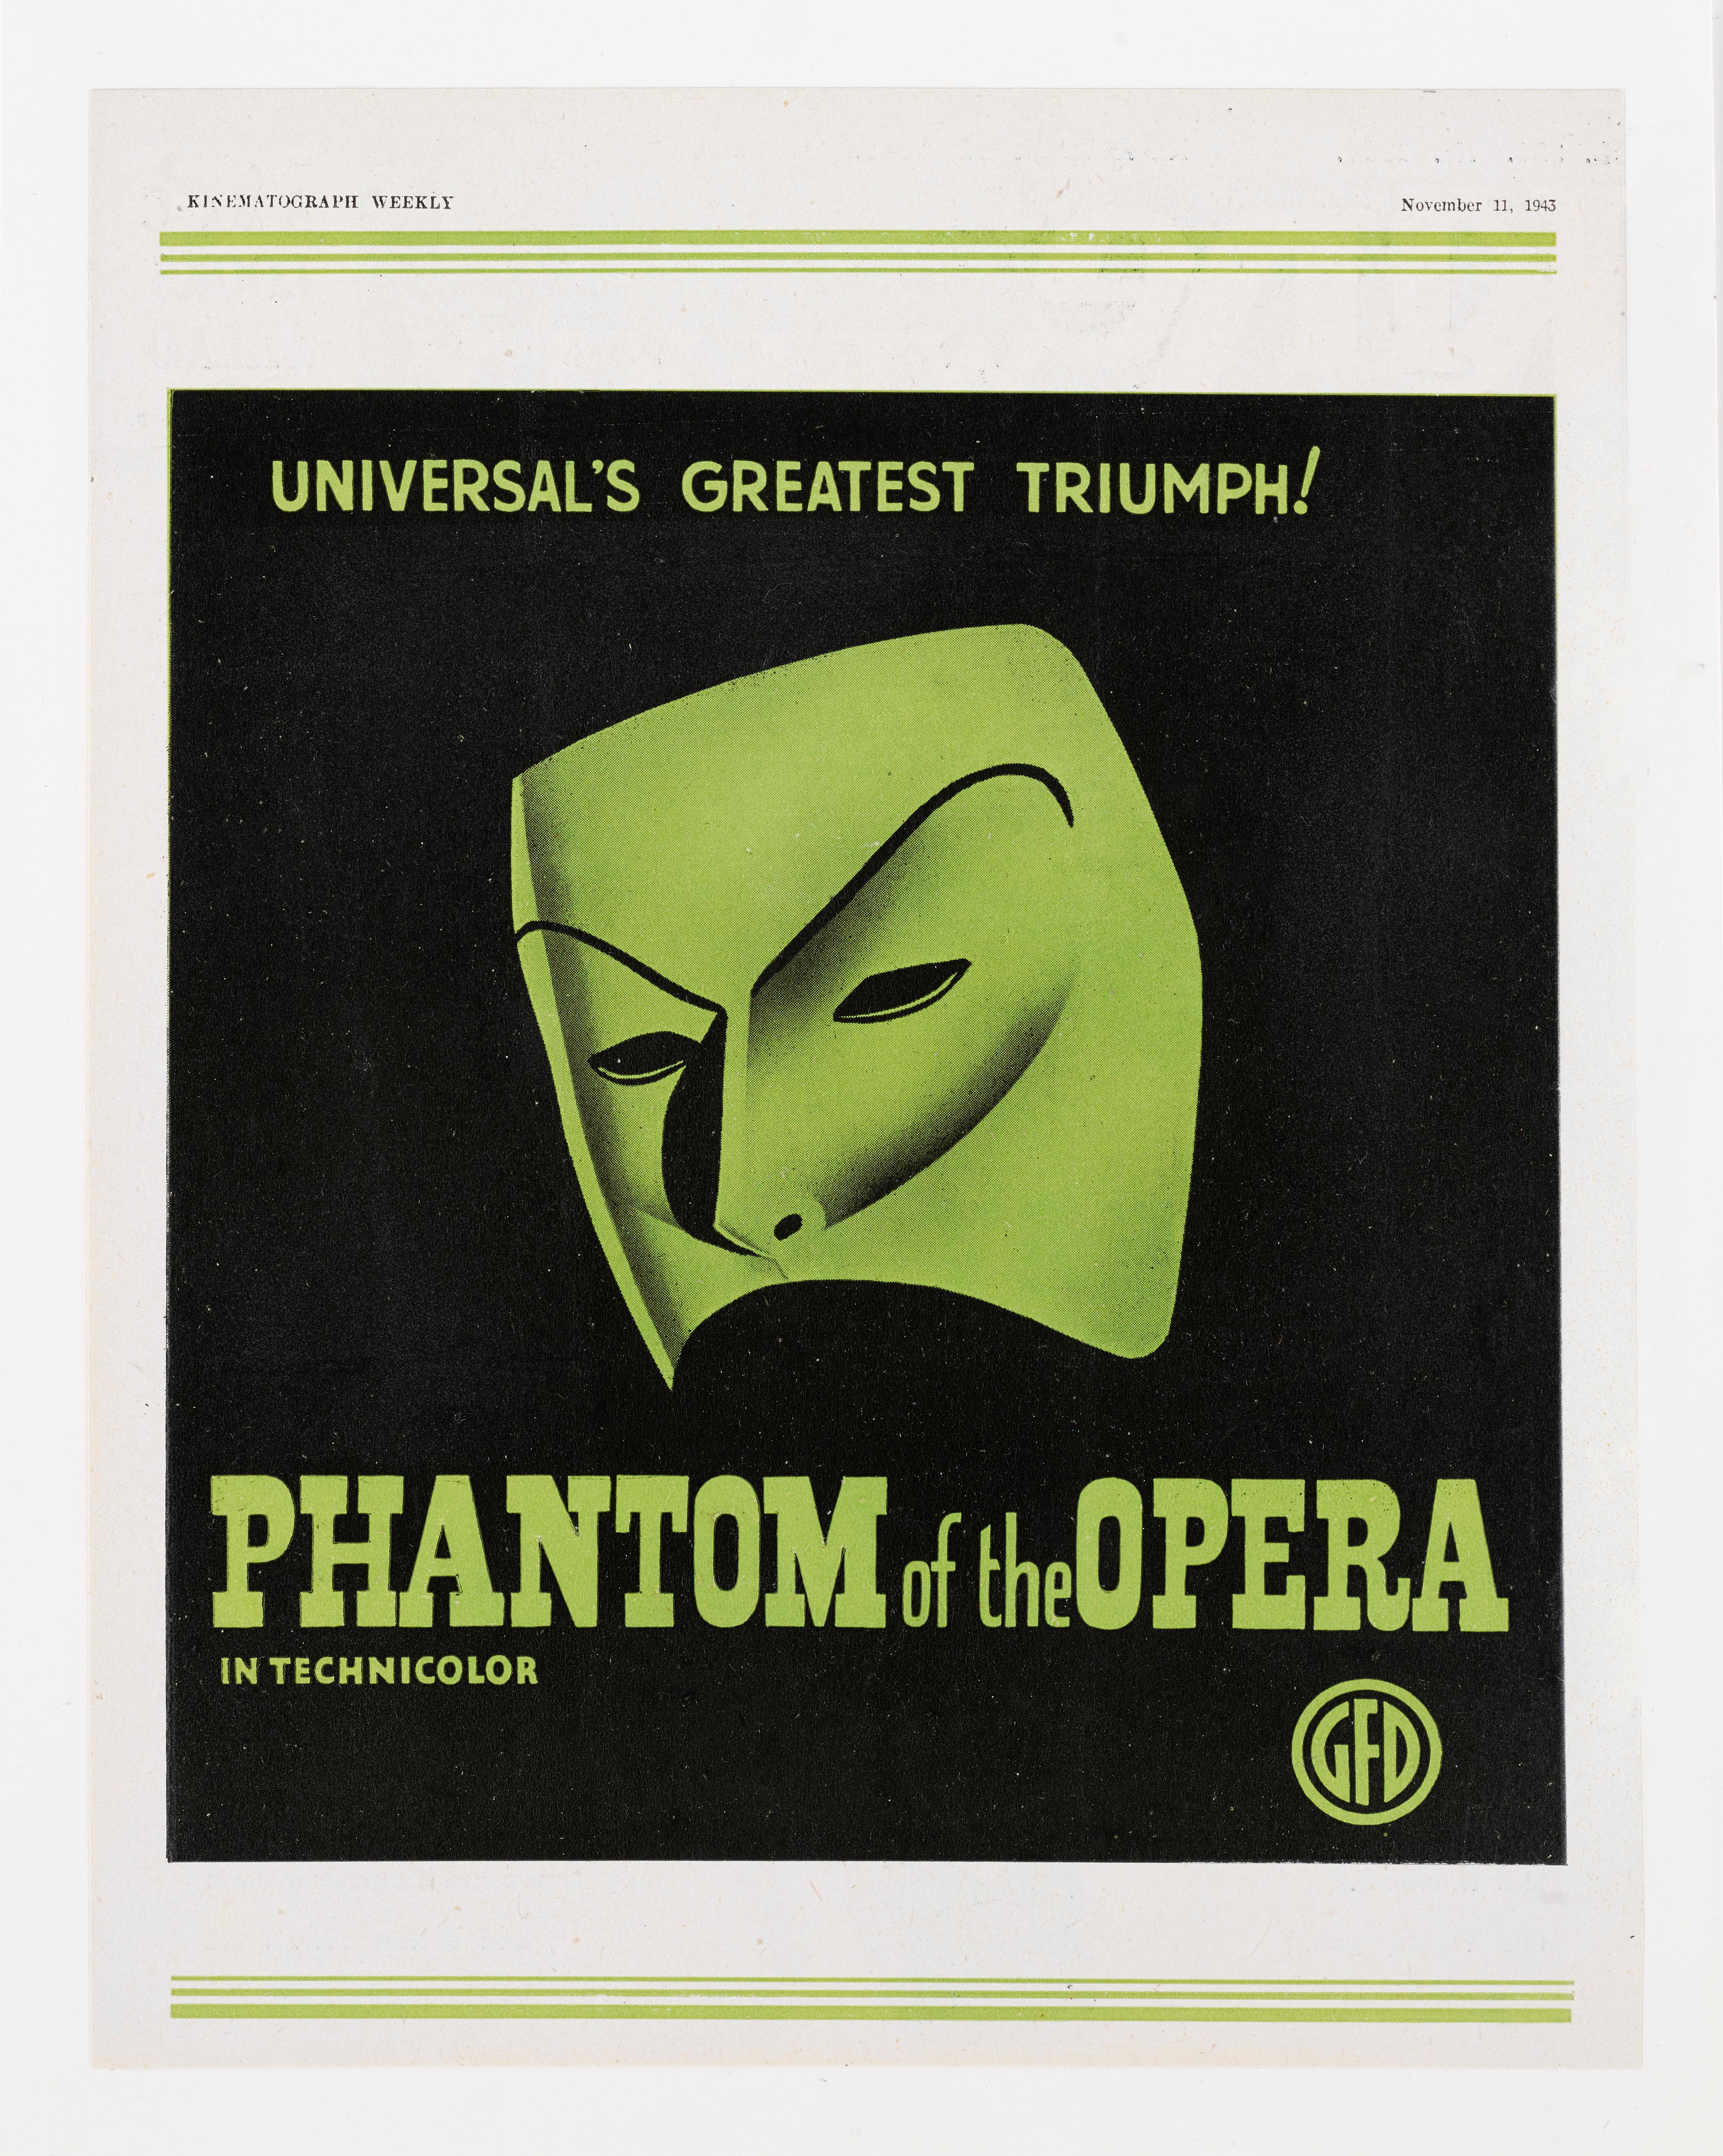 British The Phantom of the Opera